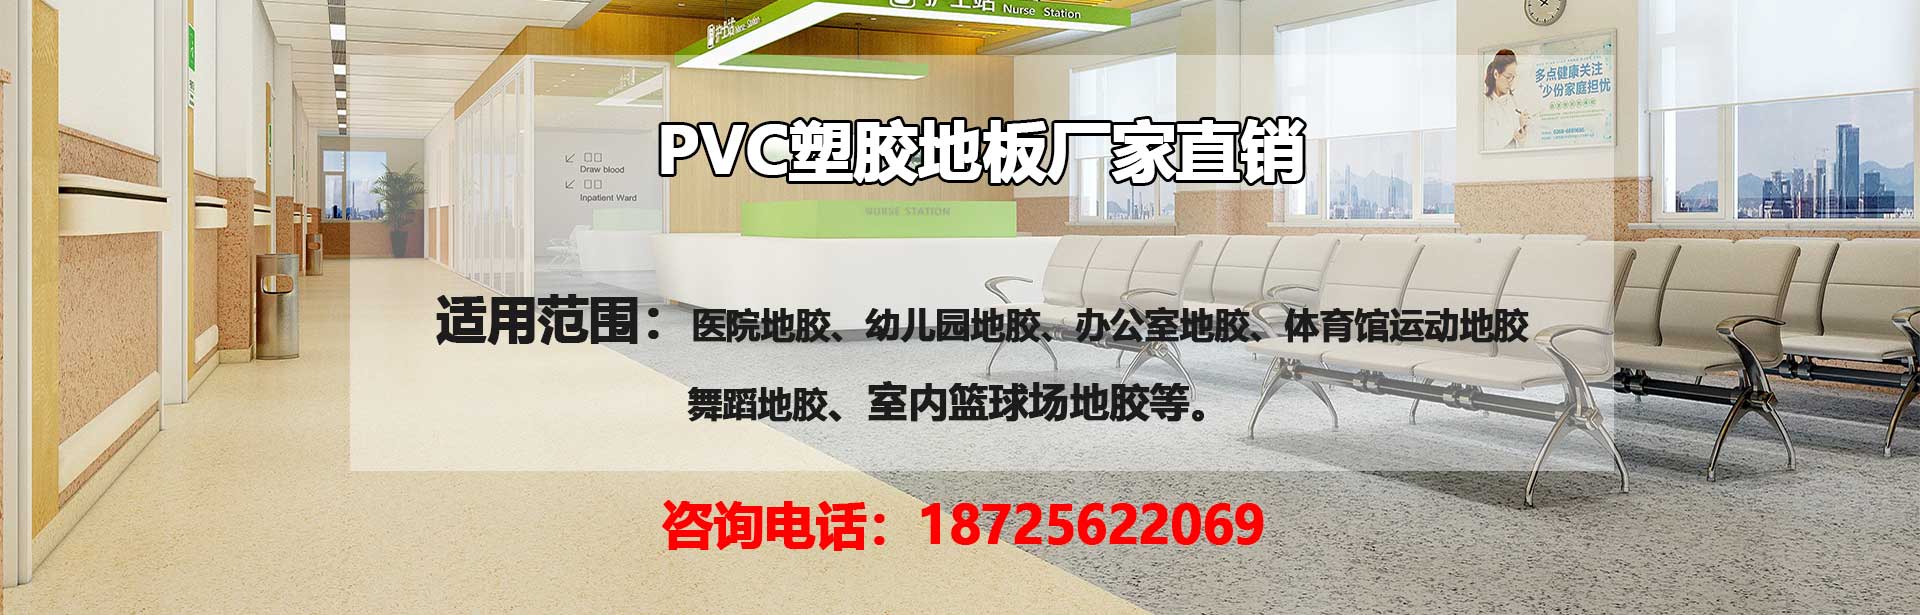 贵阳PVC塑胶地板